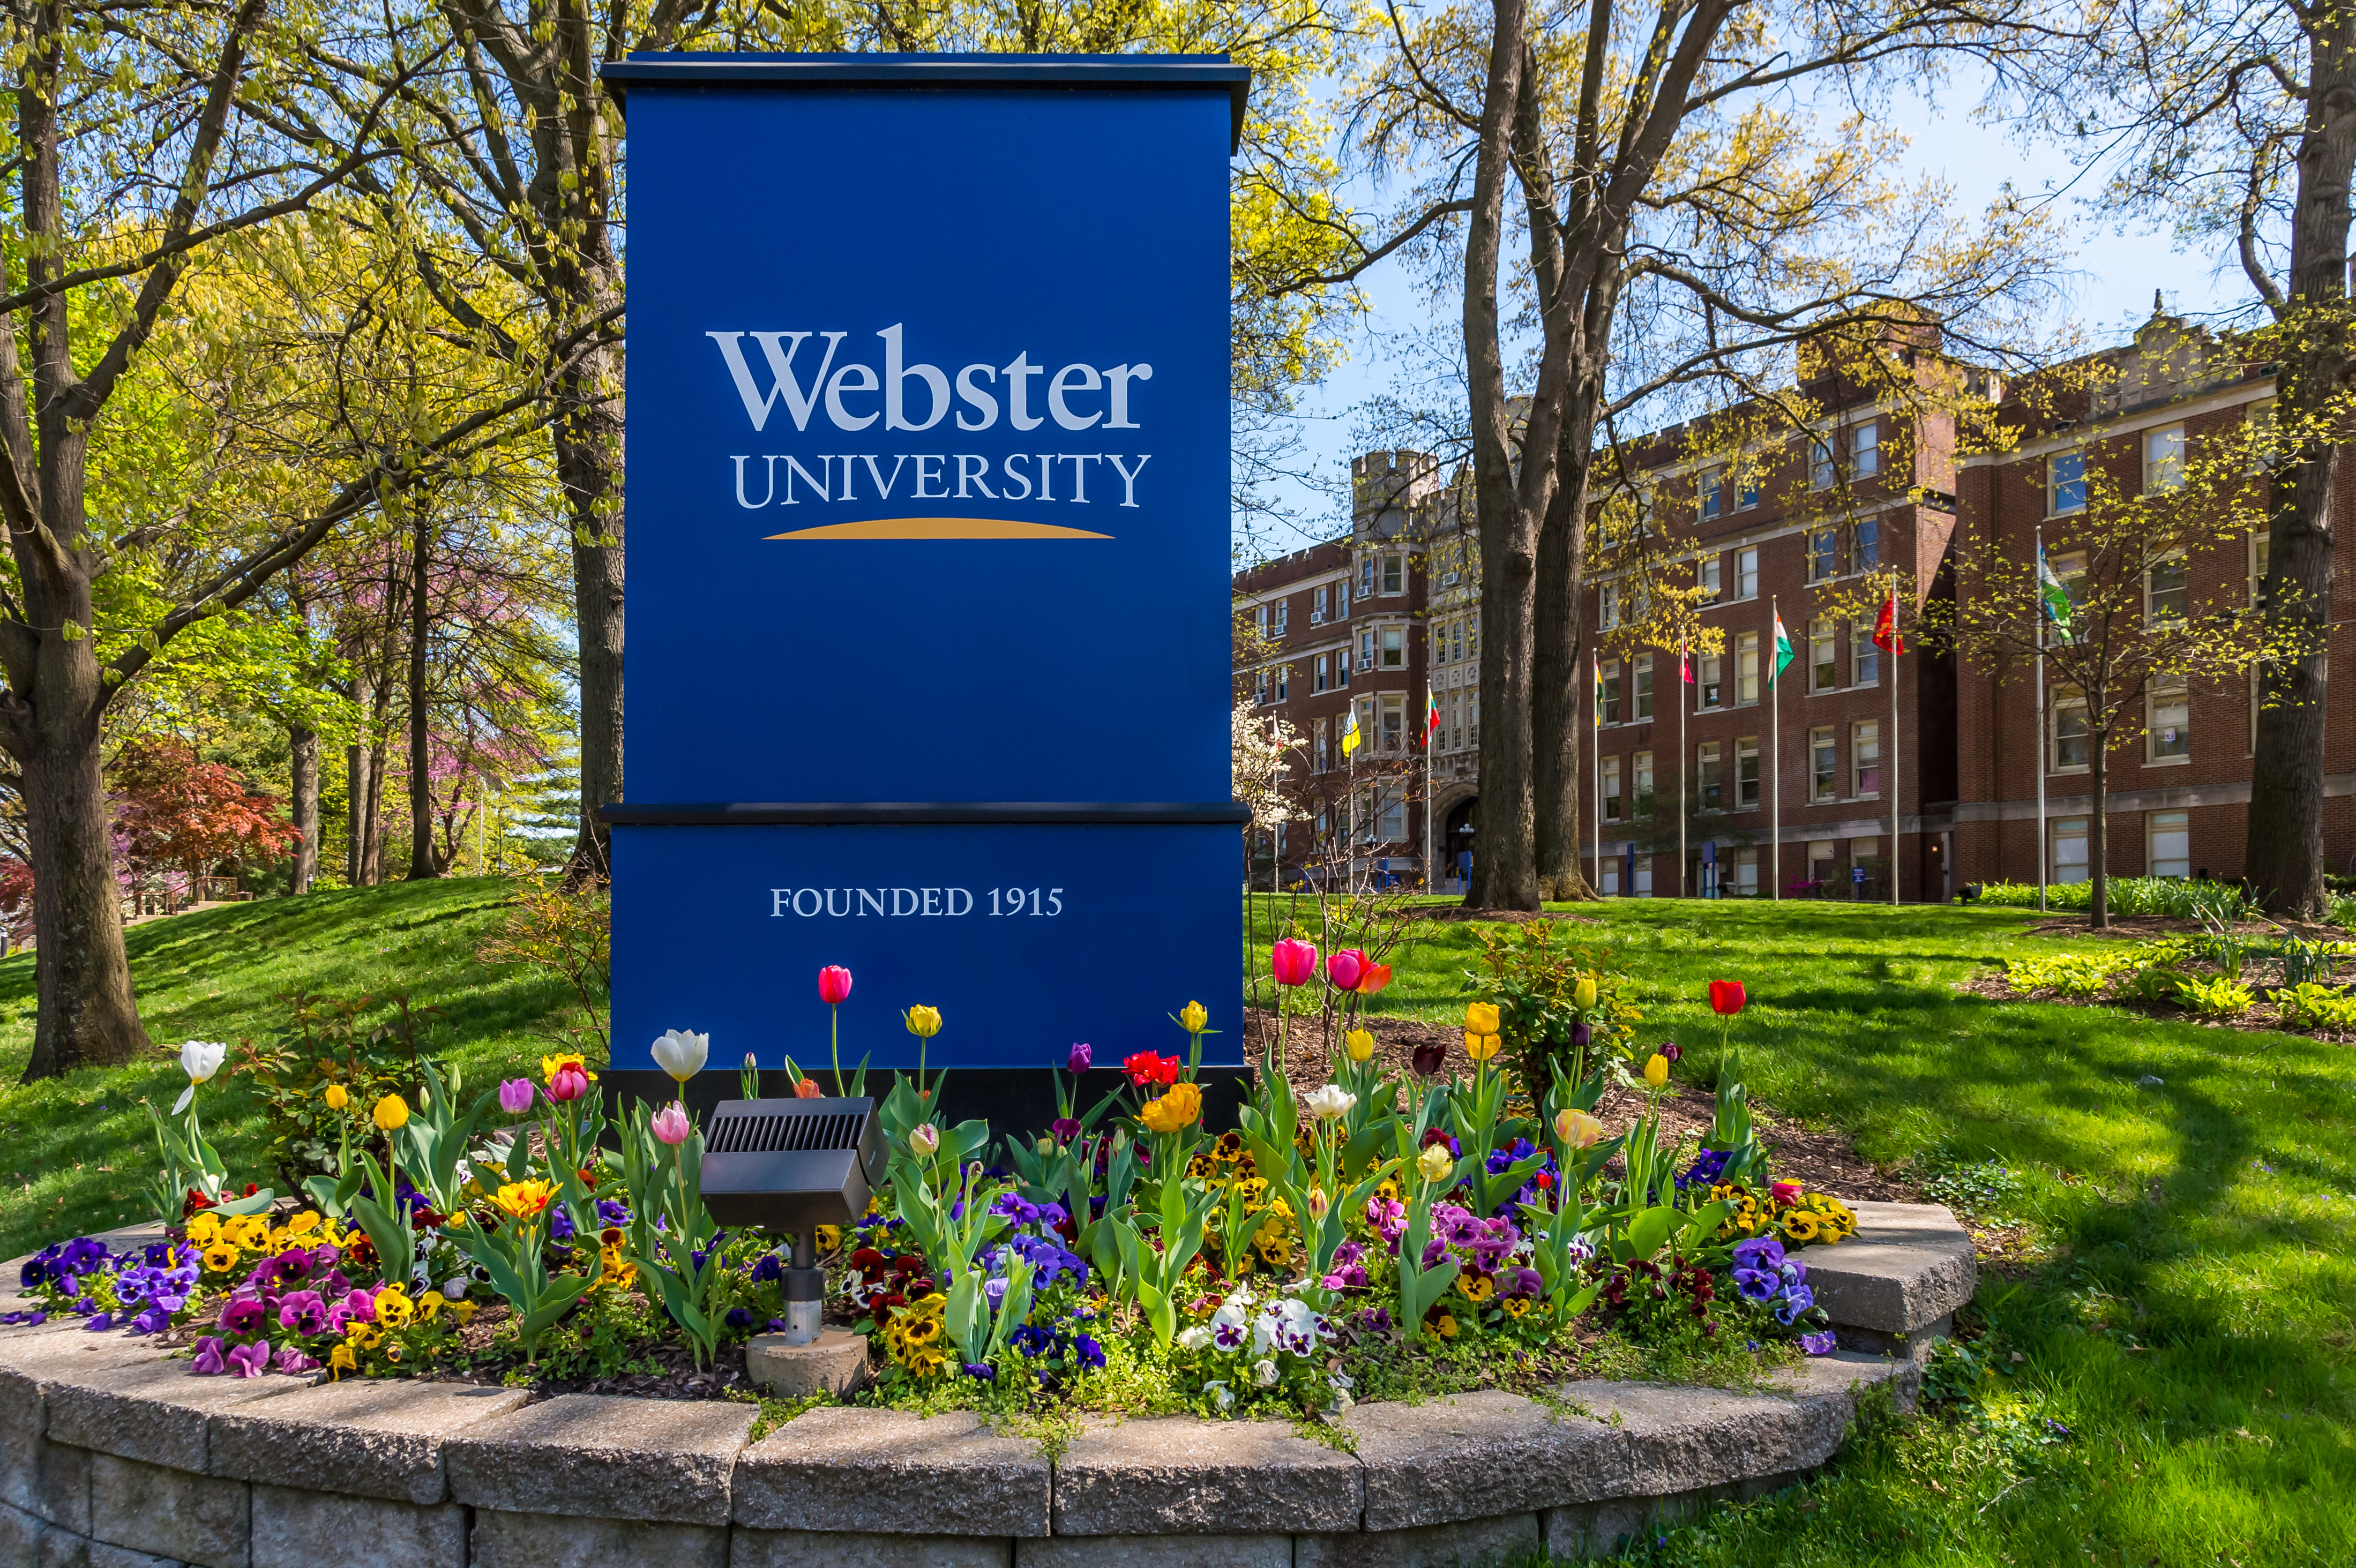 Webster University Entrance Sign in the Spring.